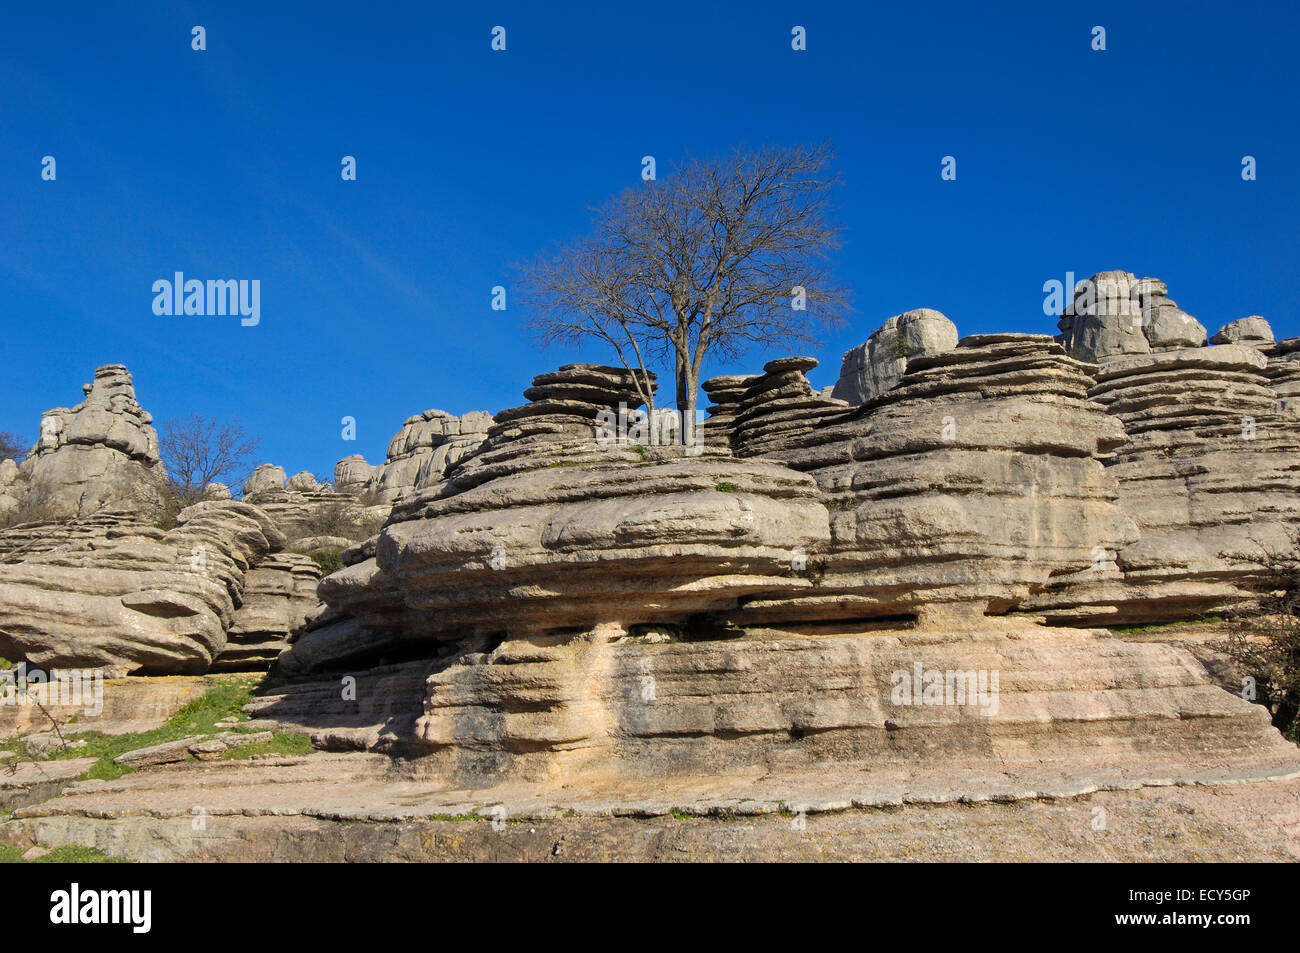 Lavoro di erosione su Jurassic calcari, Torcal de Antequera, provincia di Malaga, Andalusia, Spagna, Europa Foto Stock